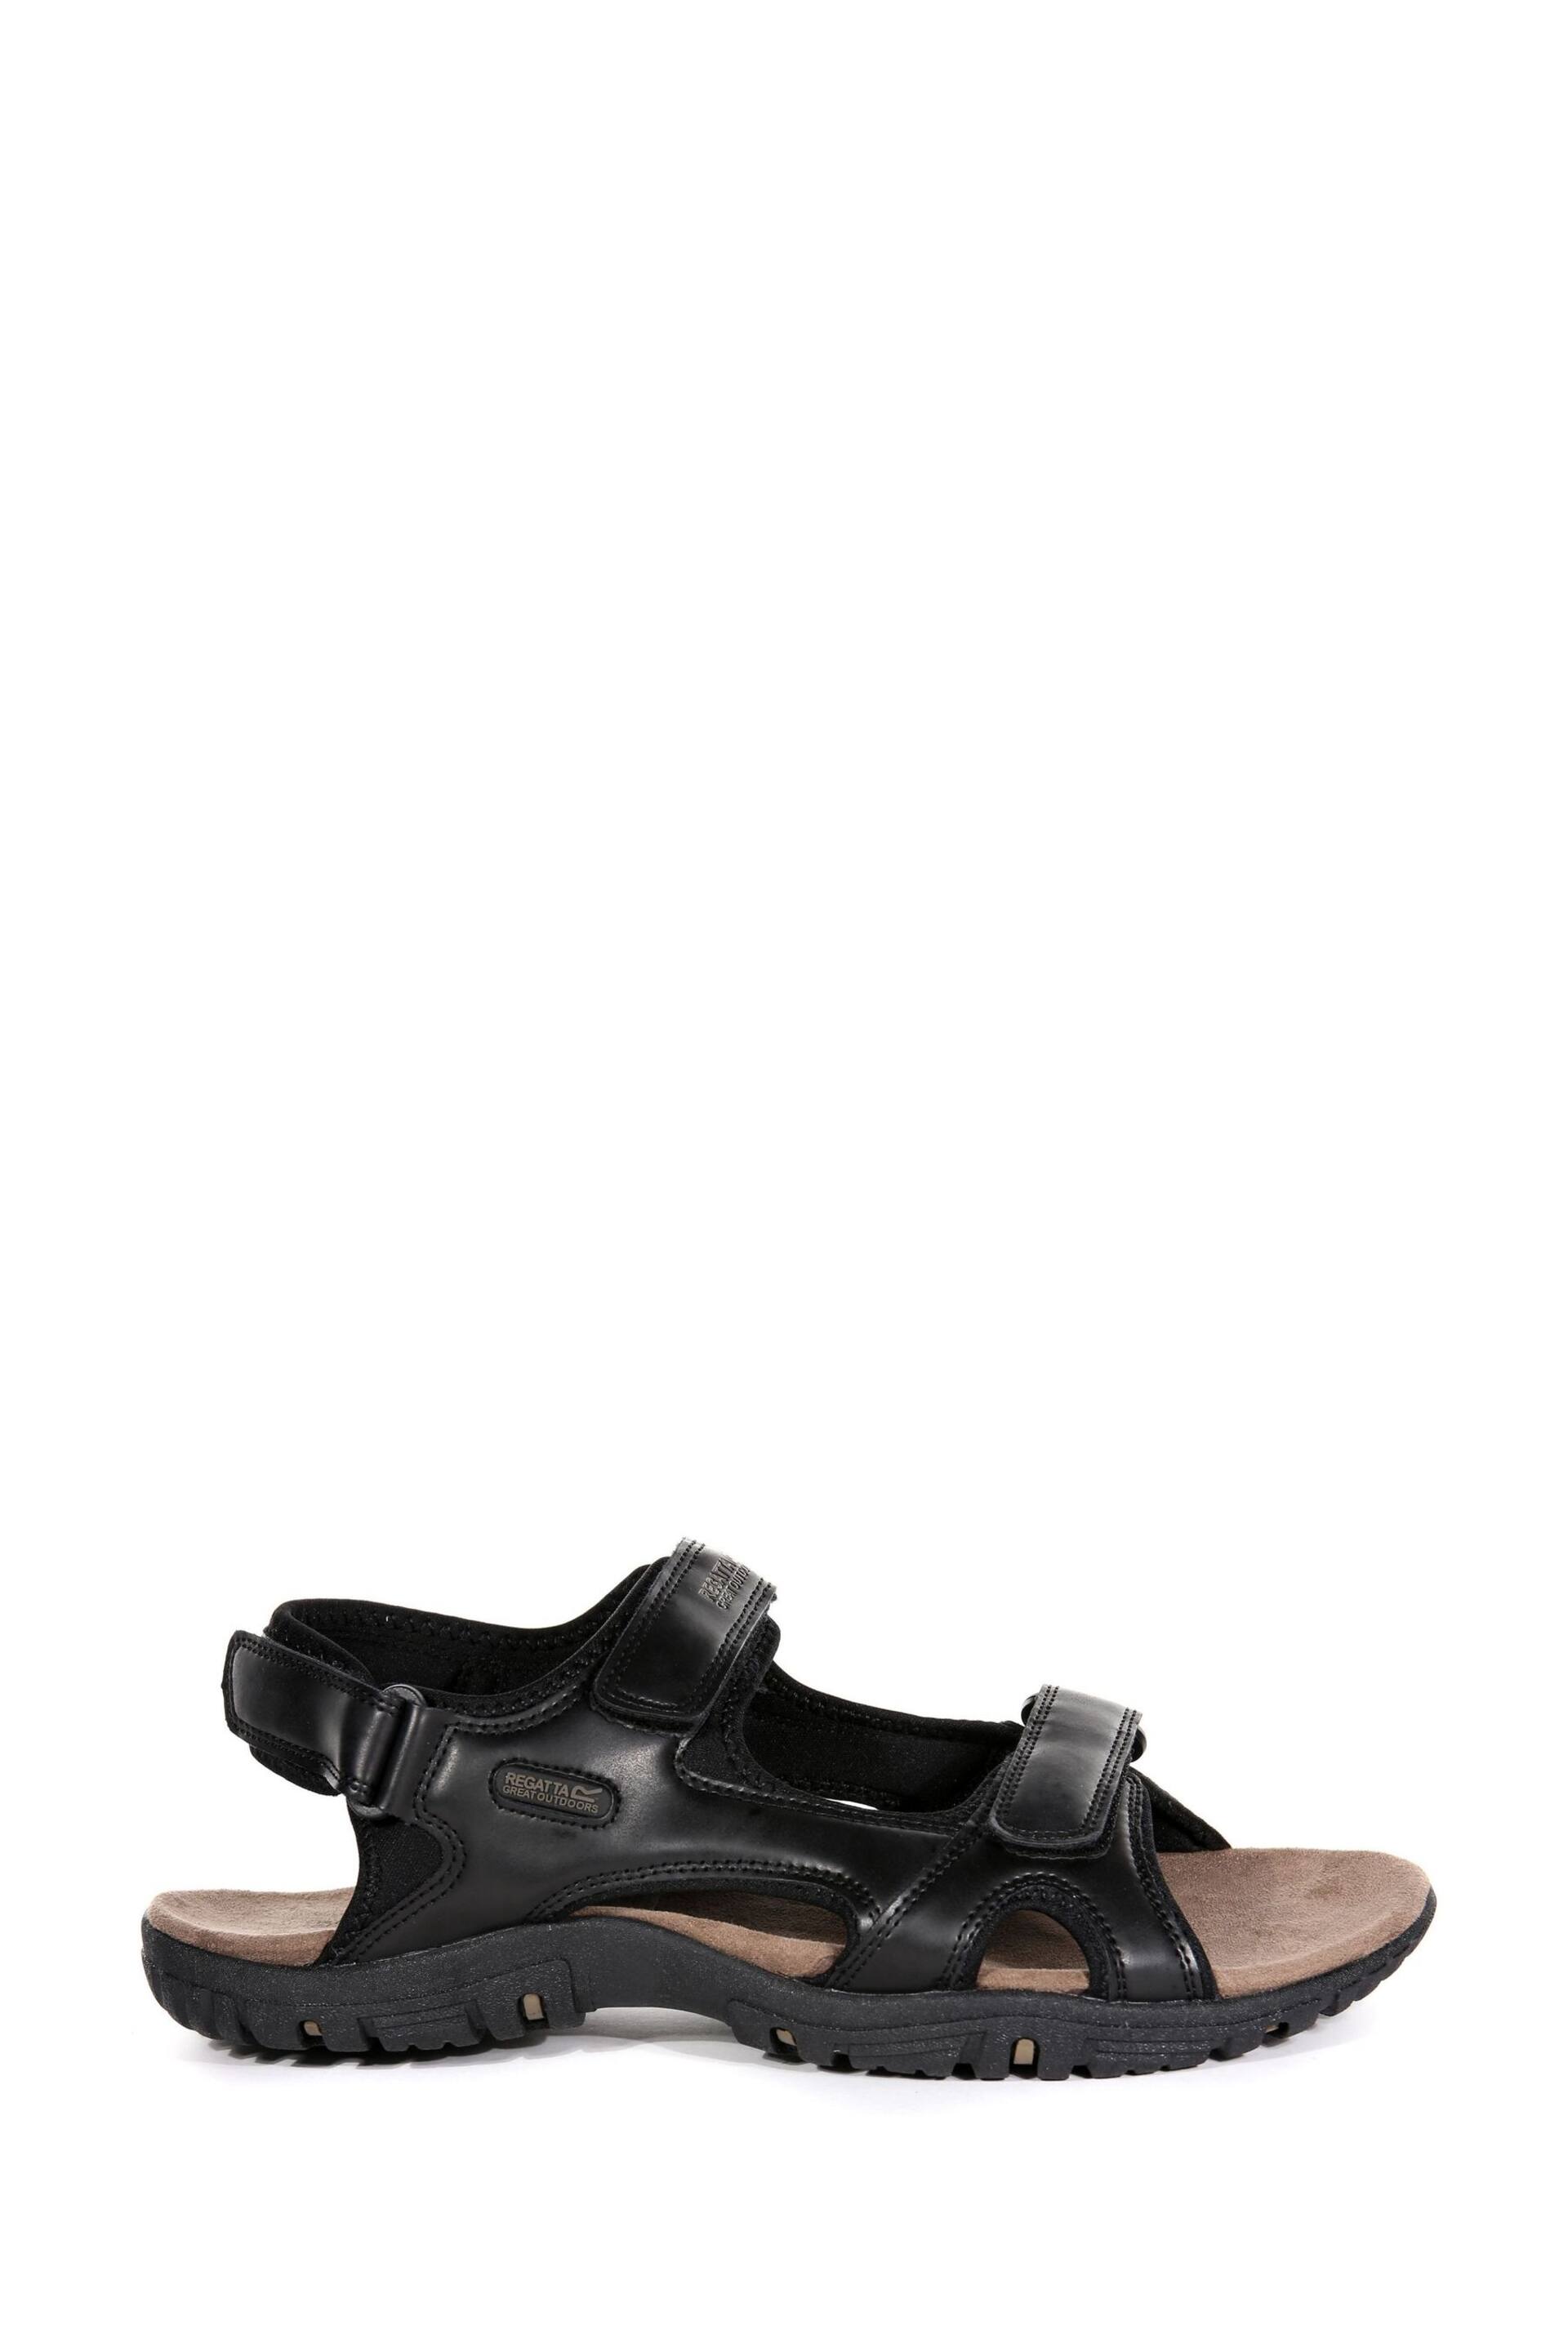 Regatta Black Comfort Fit Haris Sandals - Image 1 of 6